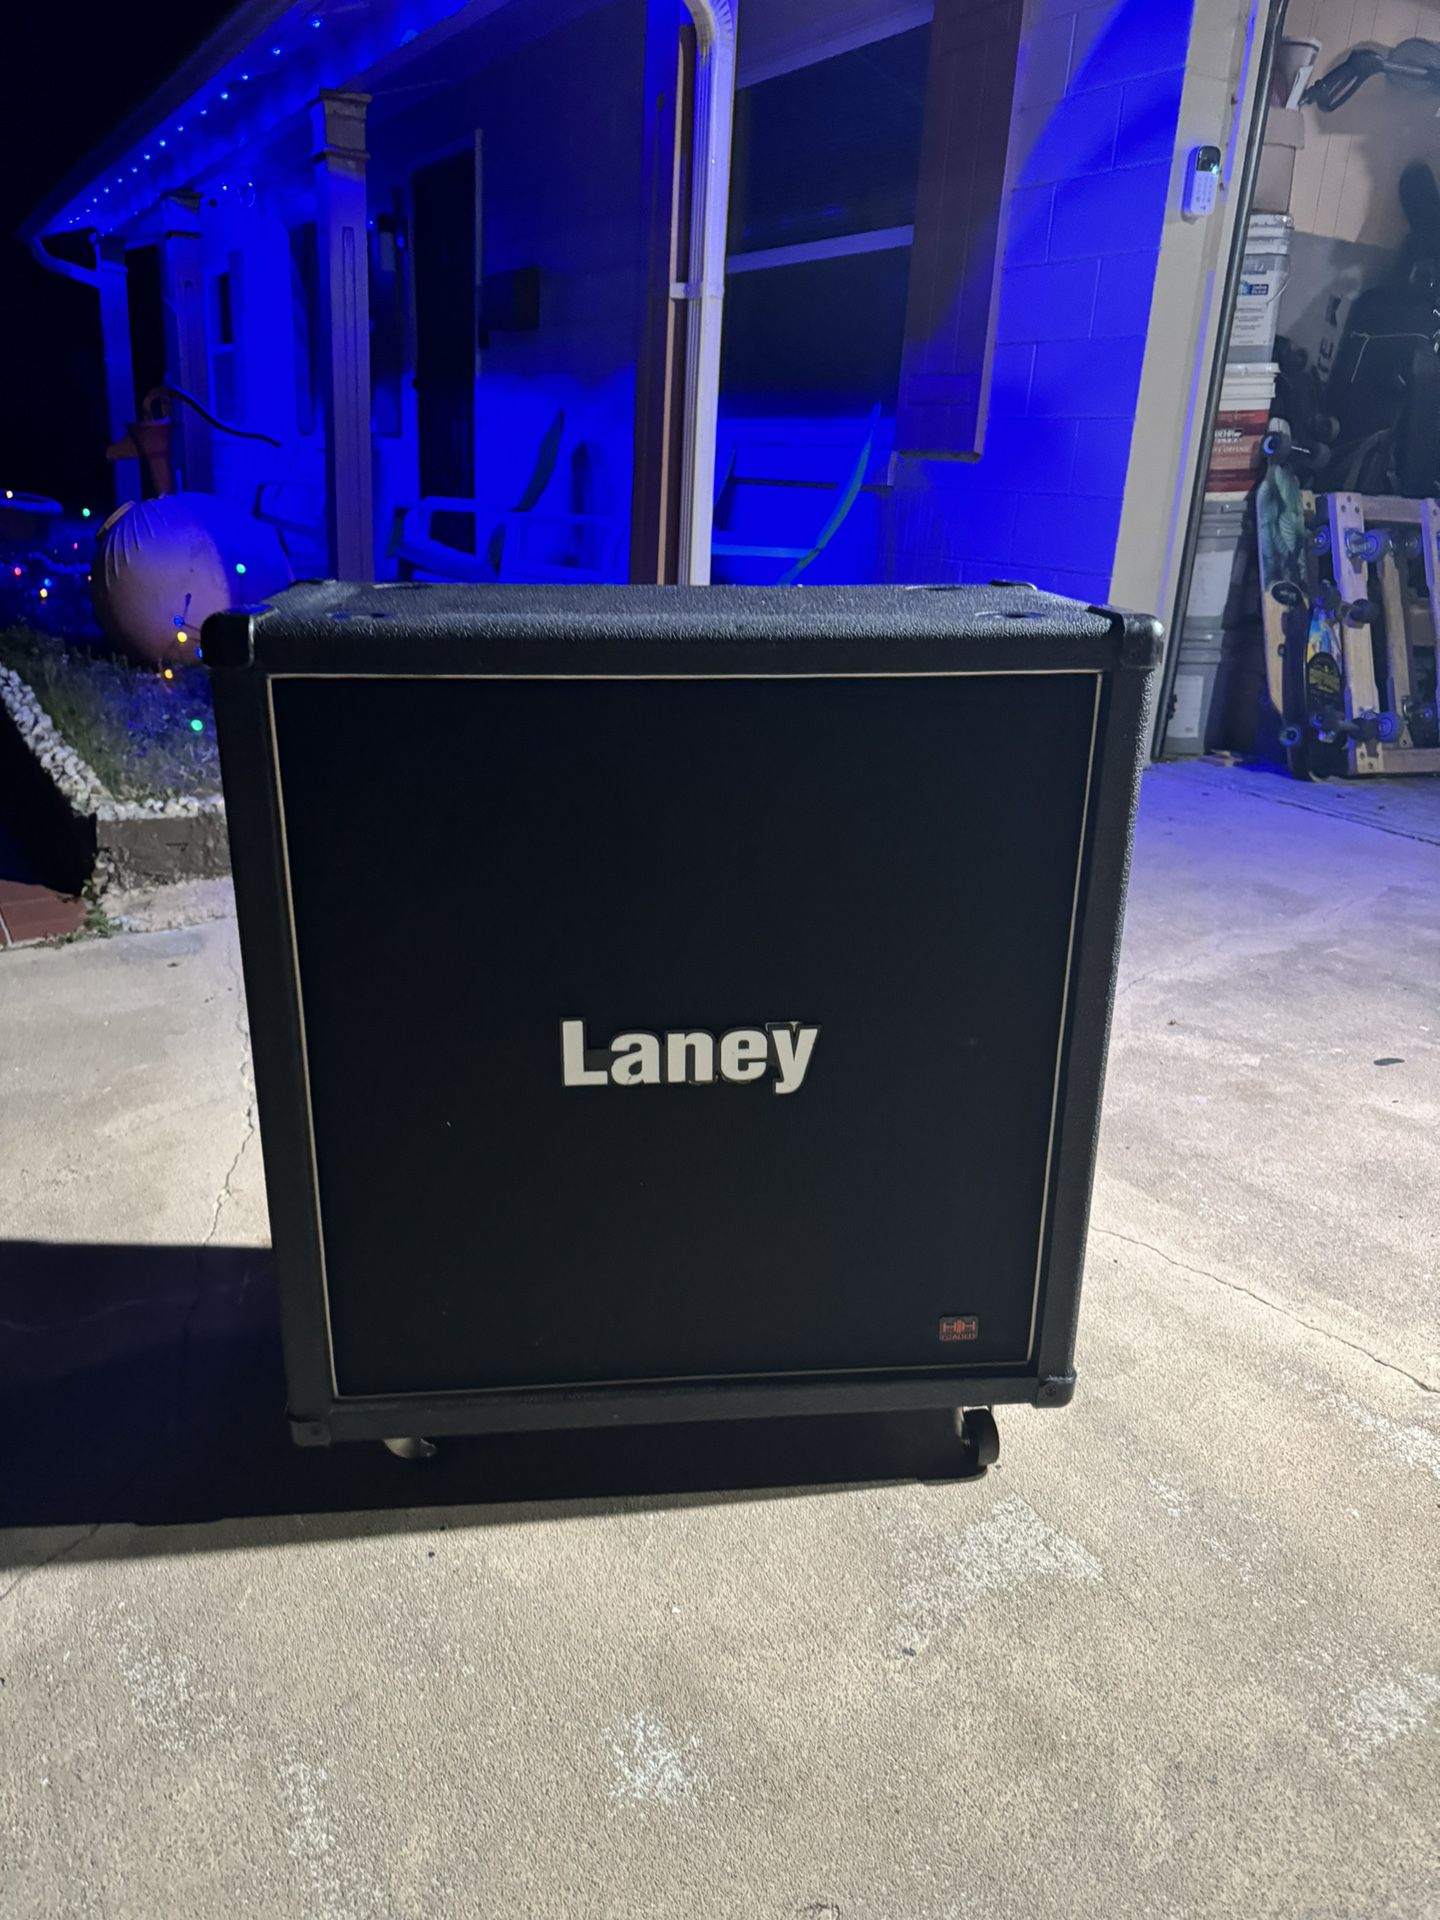 Laney Guitar Speaker